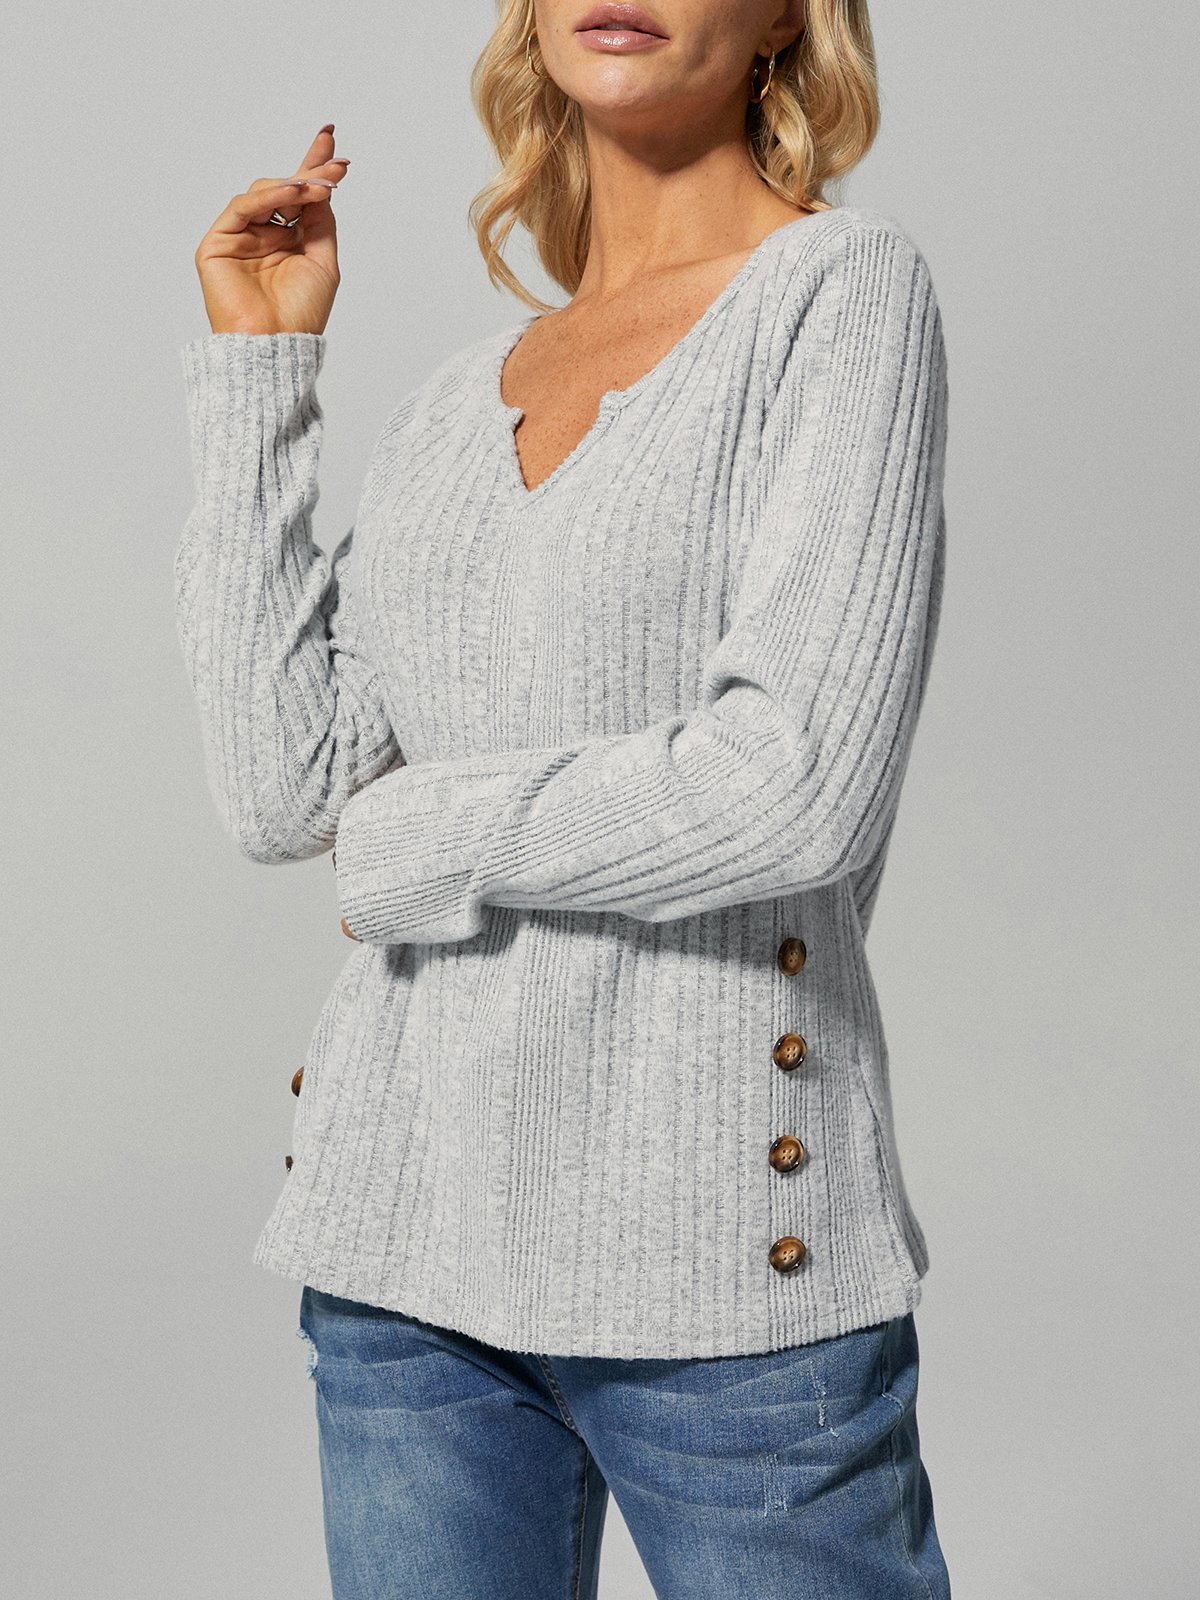 Women's Plain Buttons Plain Casual Long Sleeve T-Shirt